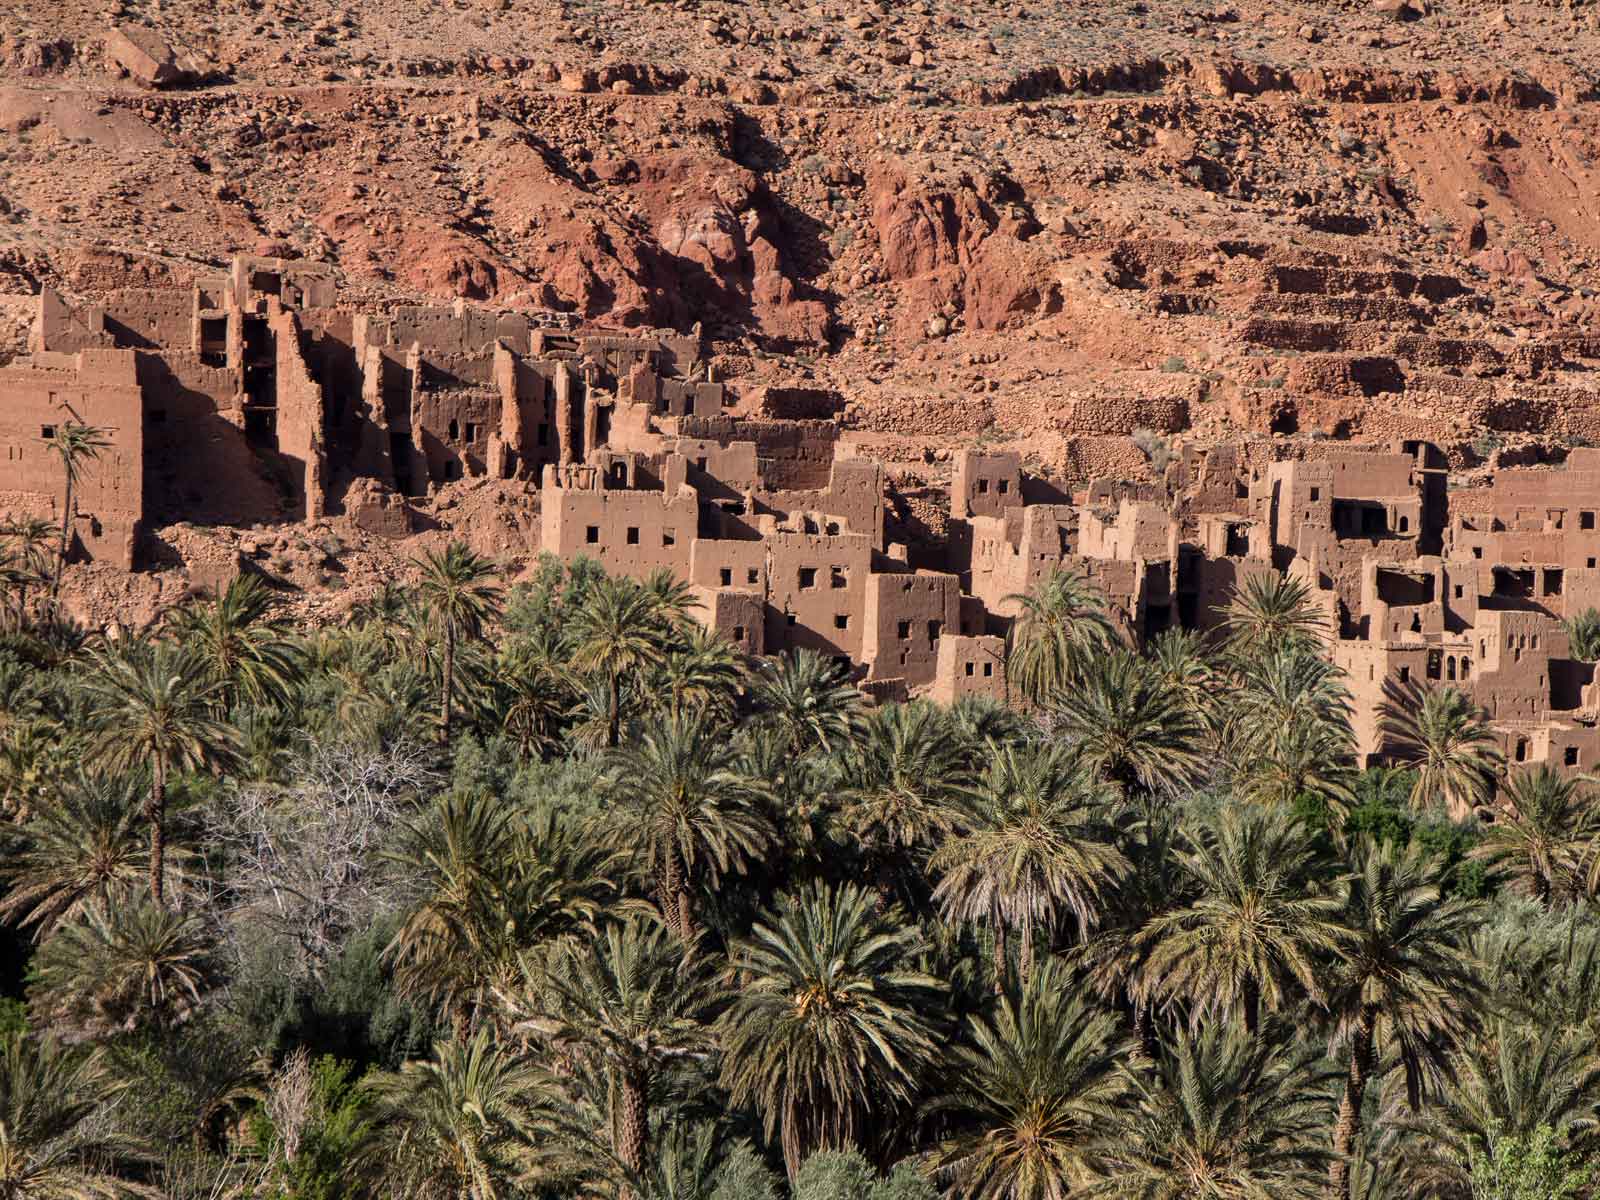 Marrakech desert trip 4 days